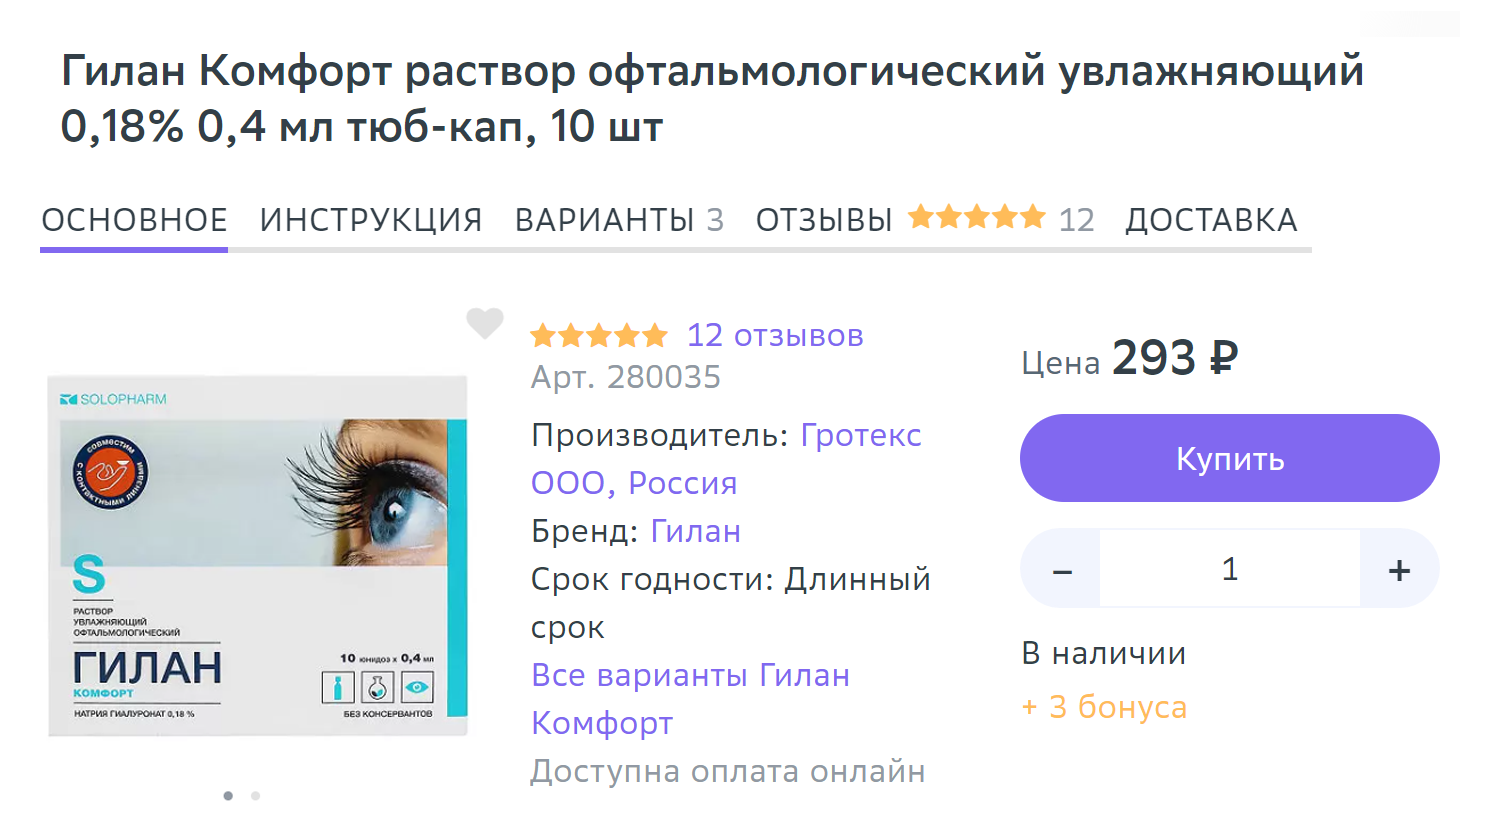 Если вы столкнулись с раздражением глаз, можно использовать офтальмологический увлажняющий раствор, например «Гилан⁠-⁠комфорт». Источник: eapteka.ru